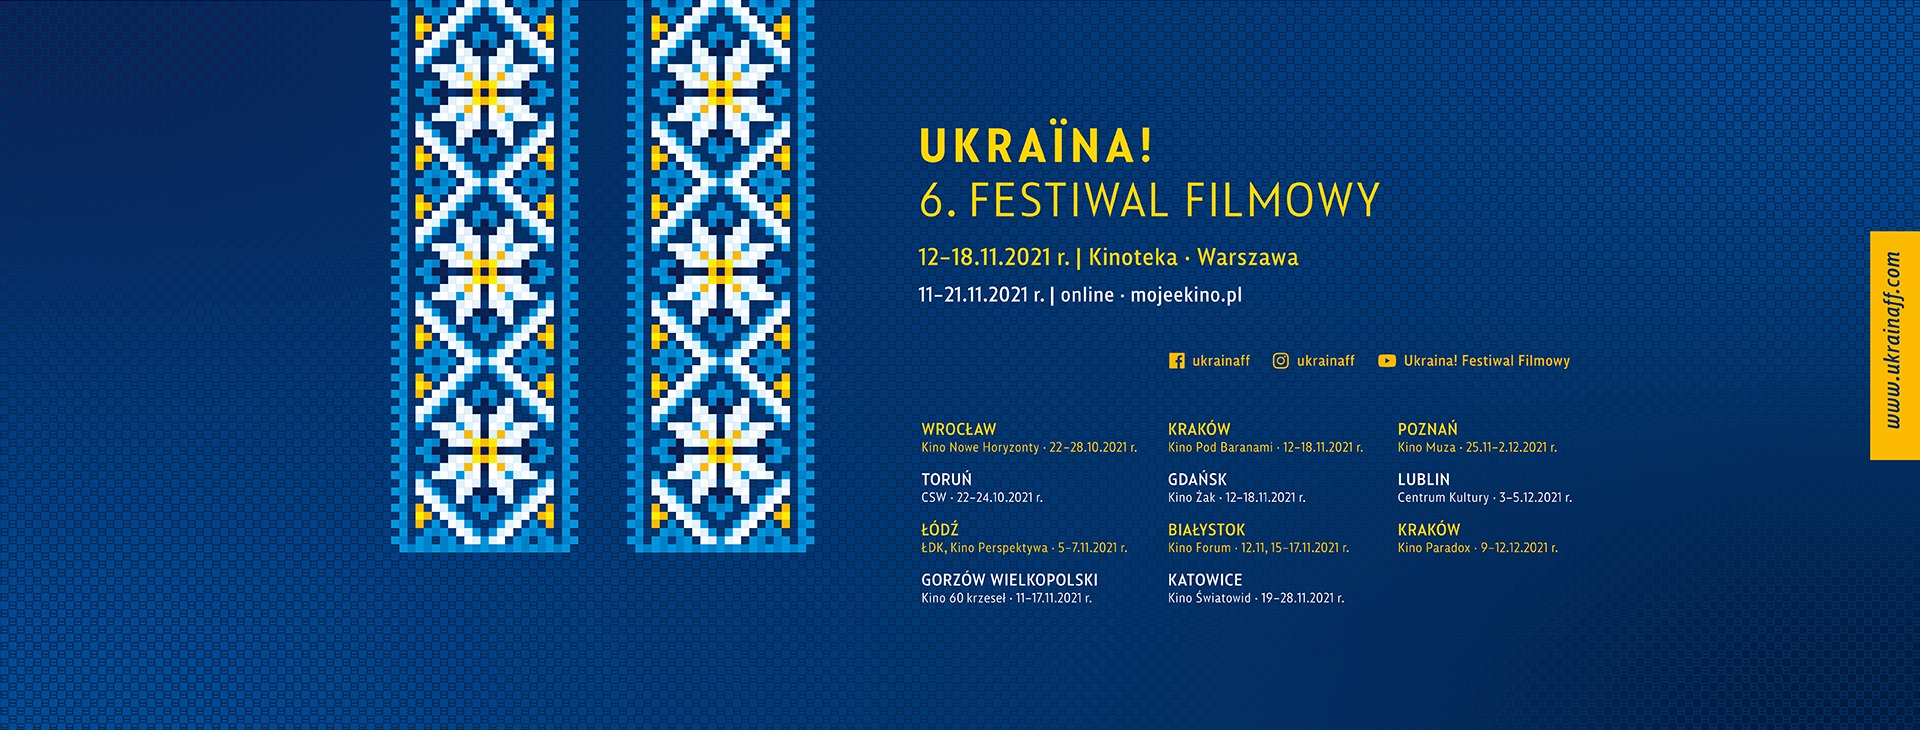 11 листопада у Польщі розпочнеться шостий фестиваль українського кіно UKRAINA! Festiwal Filmowy 2021